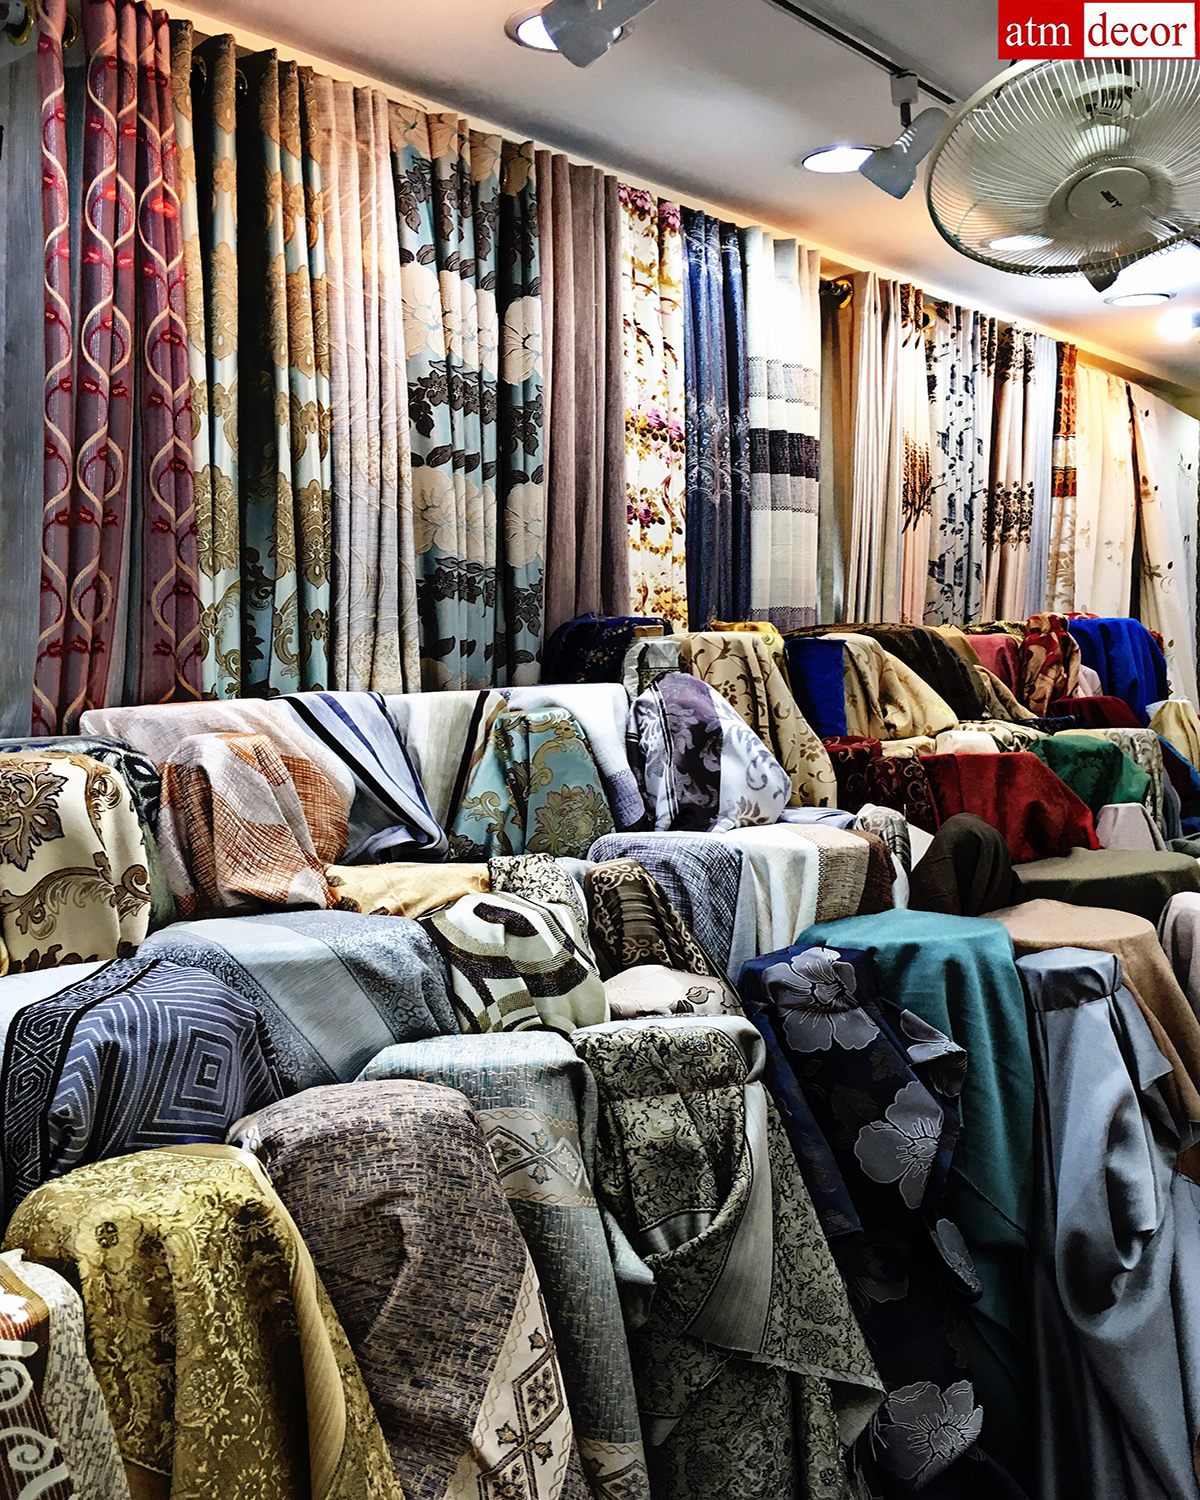 ผ้าม่านพาหุรัด ร้านผ้าม่าน แฟบริค พลัส ถนนพาหุรัด ผ้าม่านราคาโรงงาน